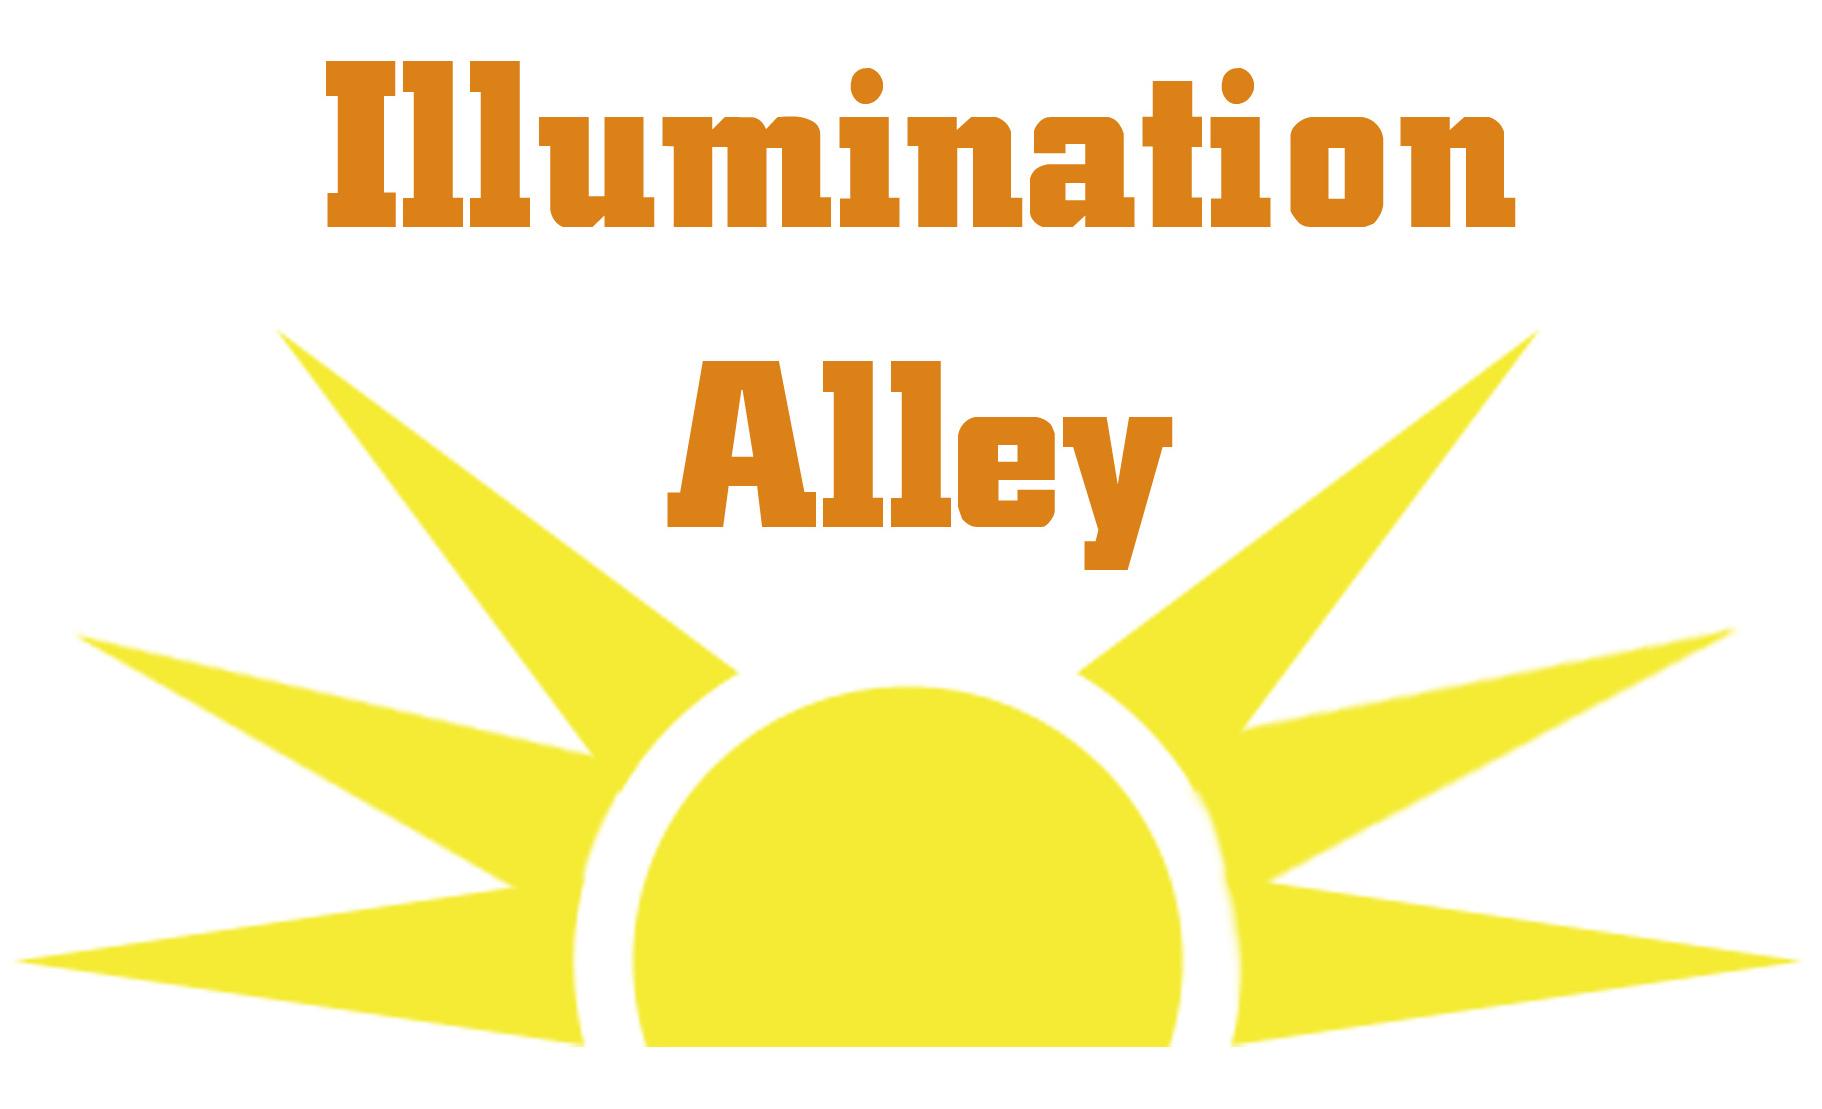 Illimuniation-alley-logo-300dpi-cropped.jpg